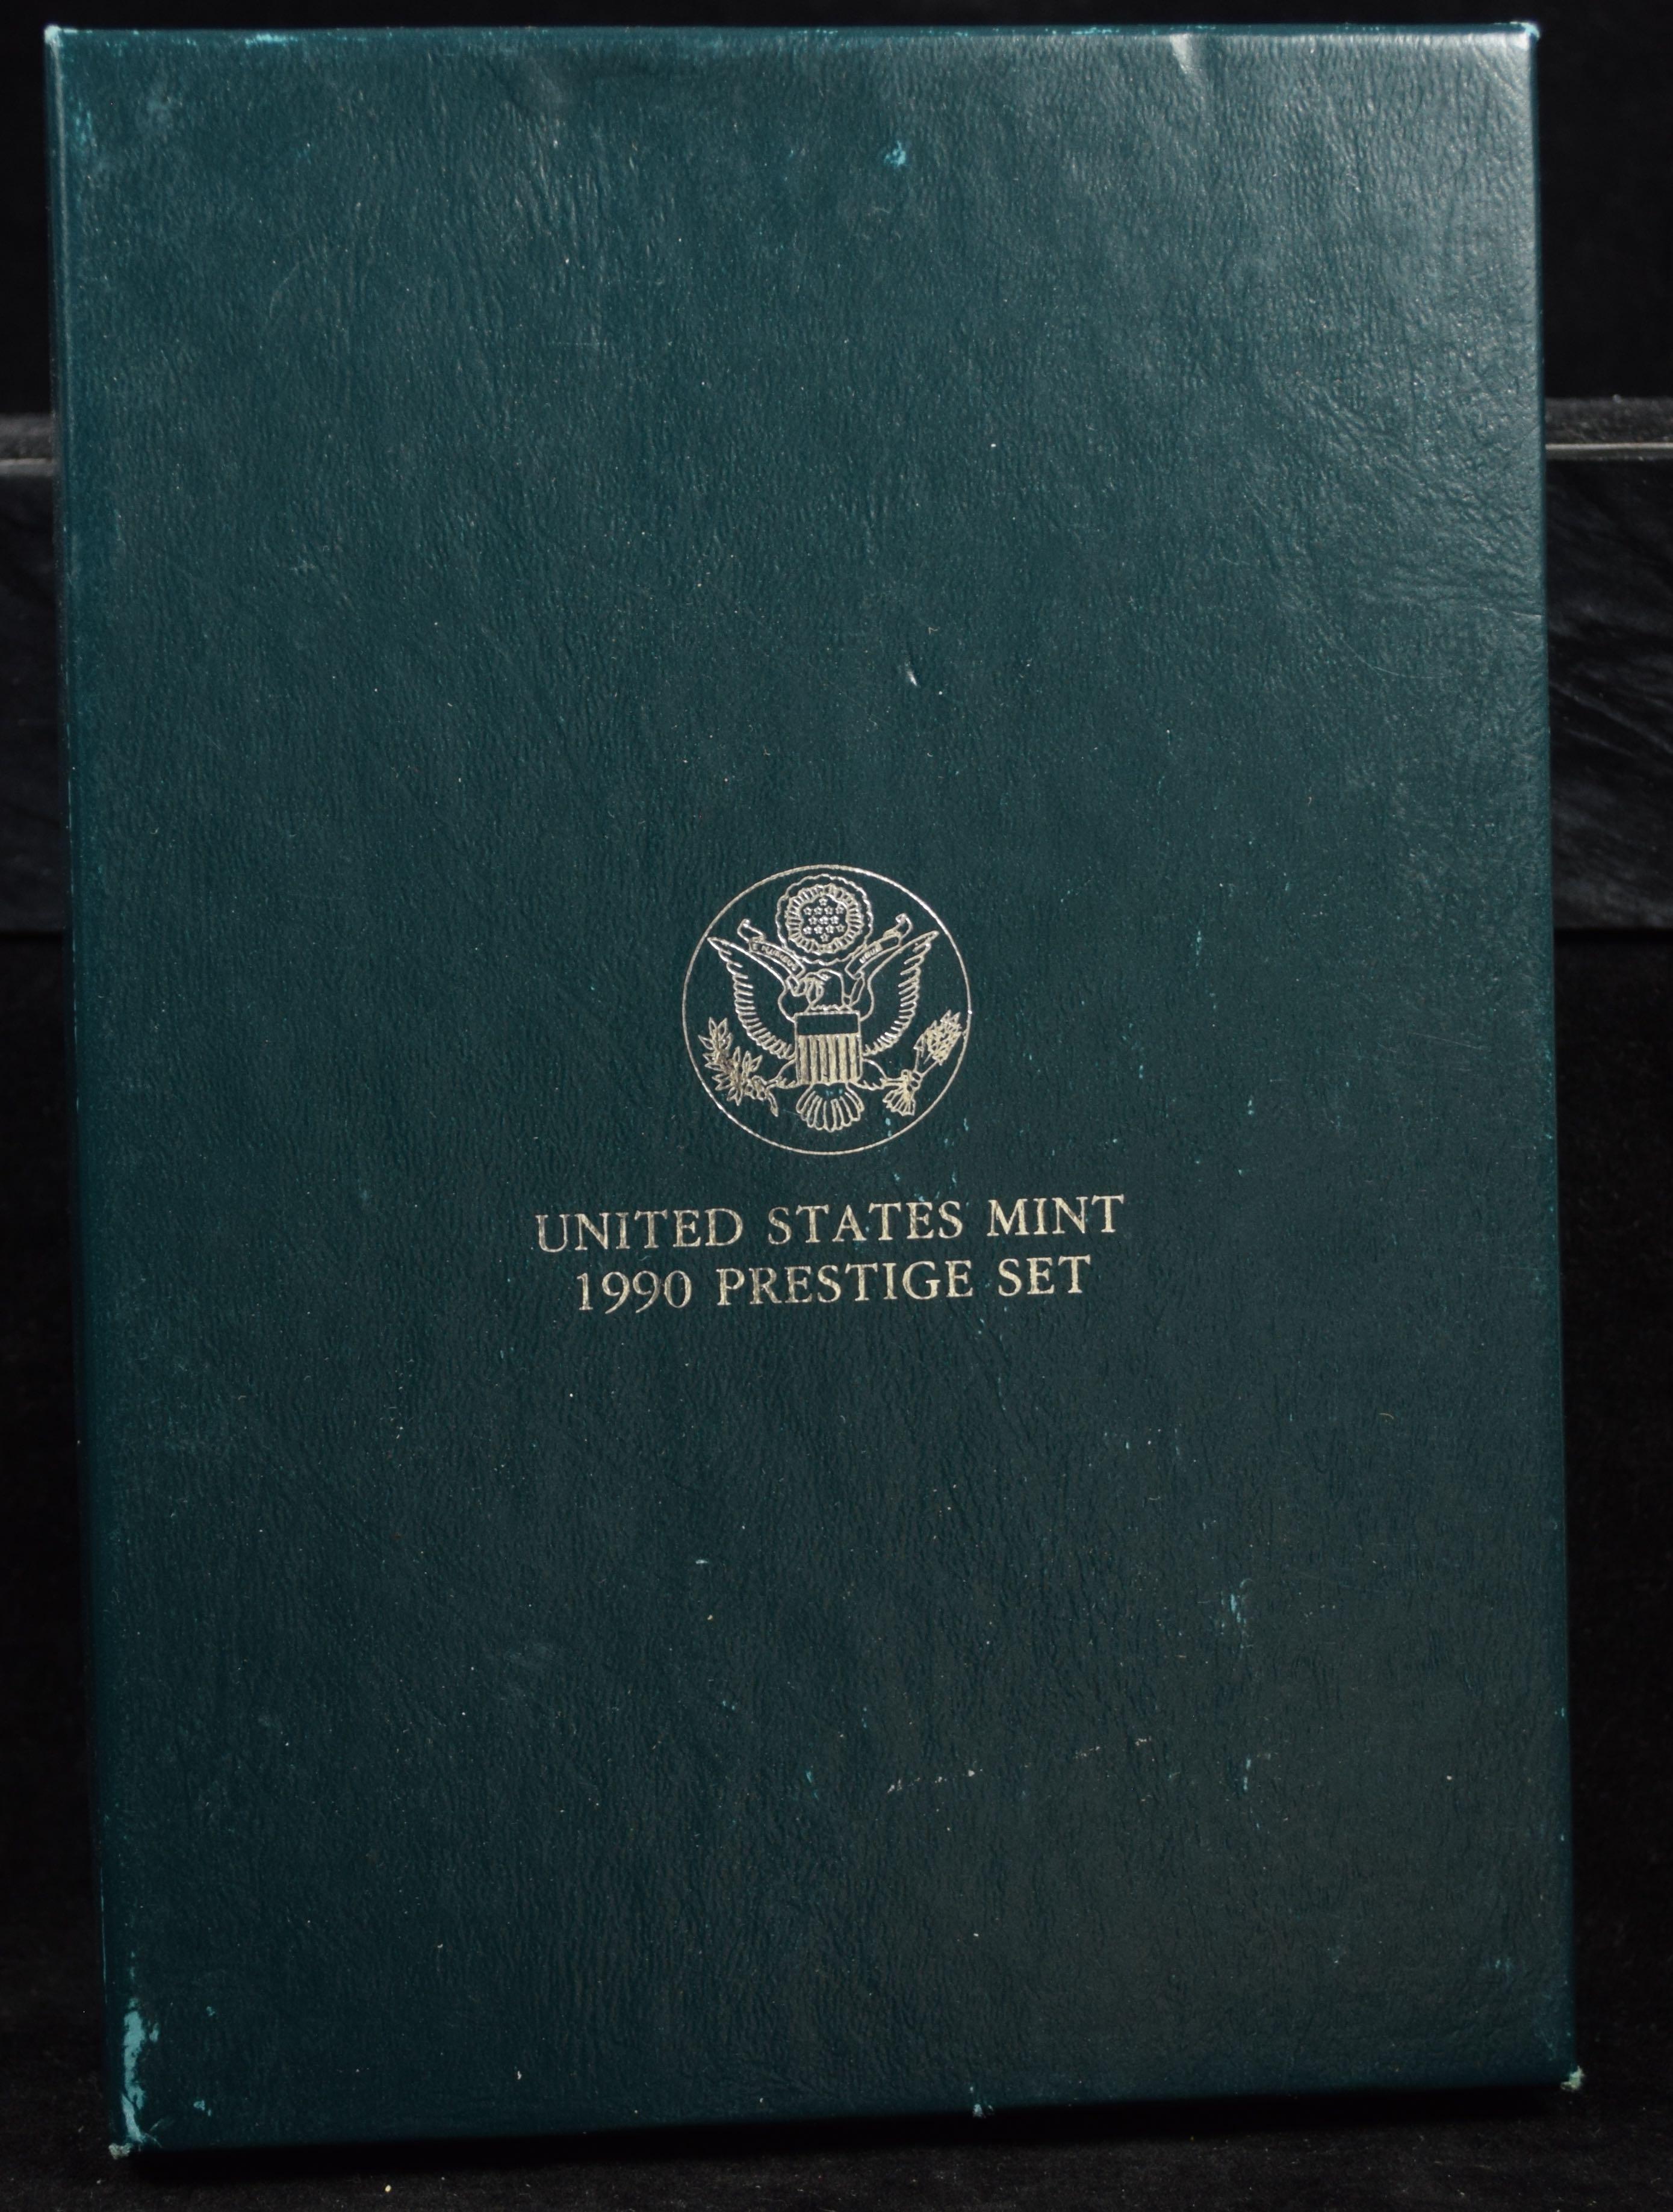 1990 Prestige Set